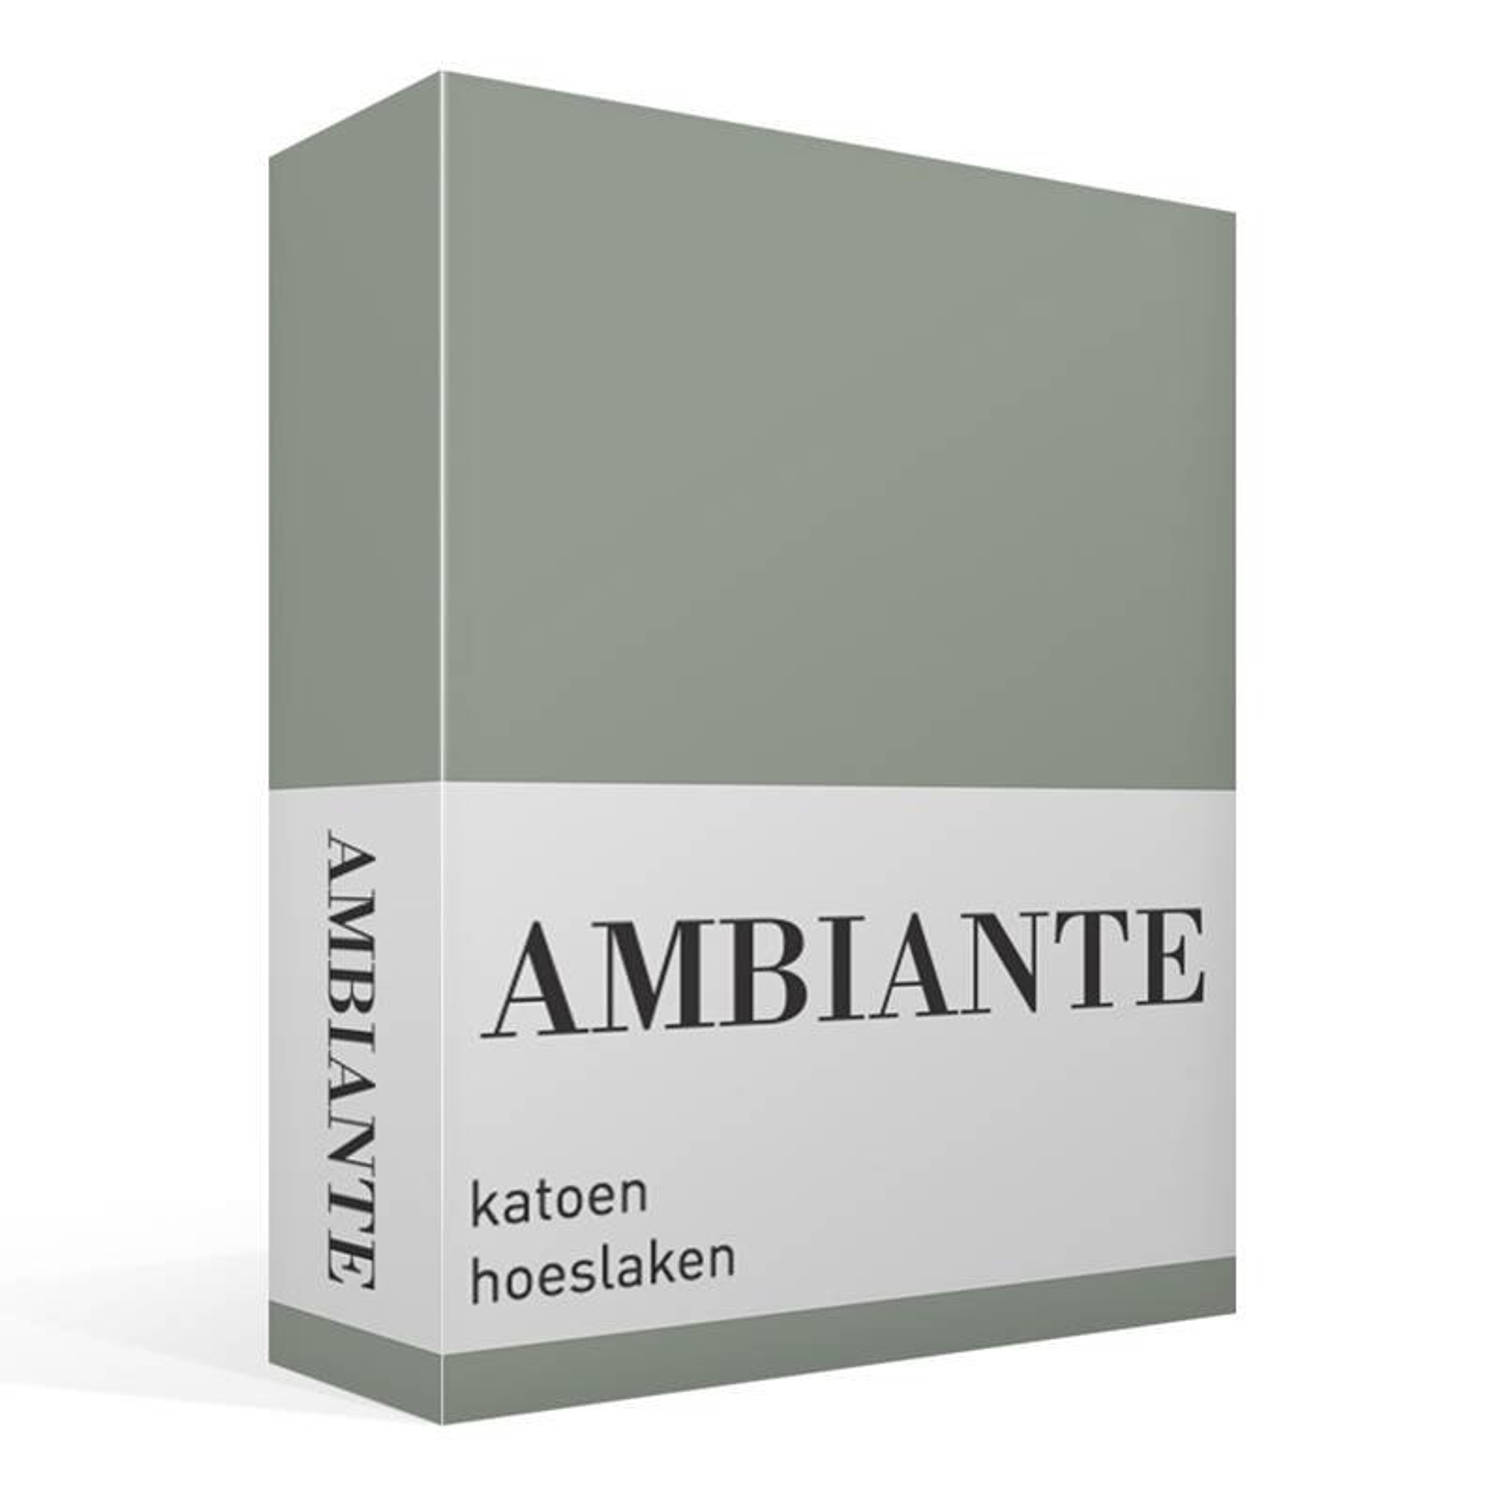 AMBIANTE Cotton Uni Hoeslaken - 100% Katoen - 1-persoons (70x200 Cm) - Green - Groen